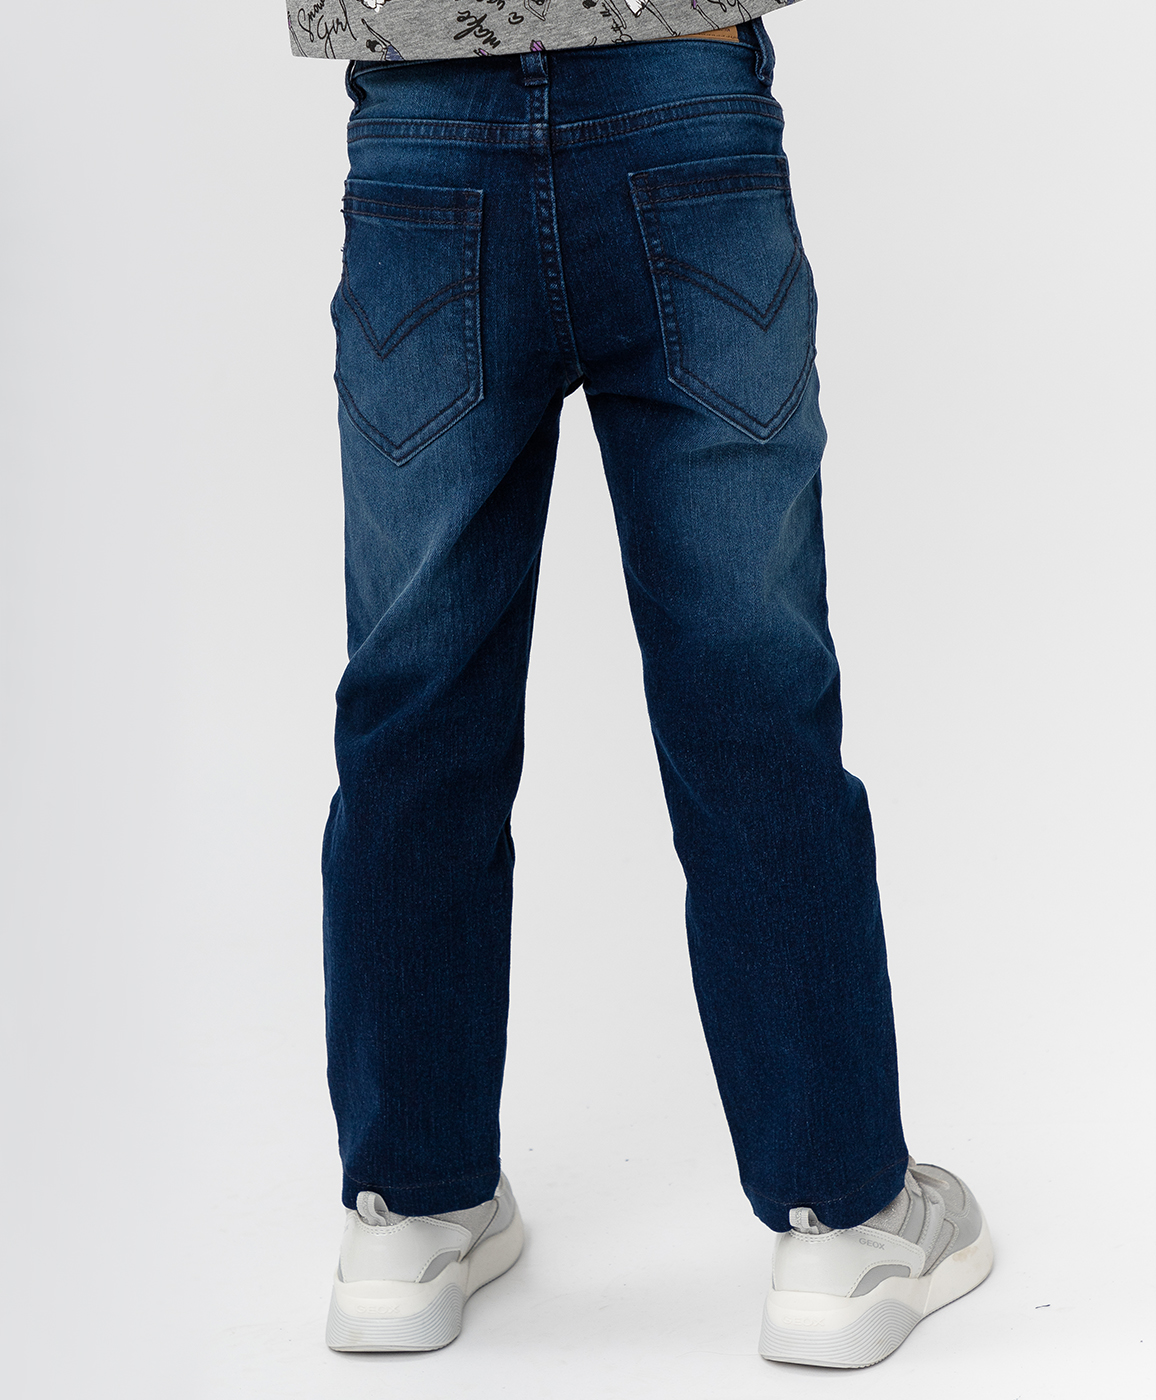 Темно-синие джинсы Button Blue 220BBGMC6302D500, размер 98, цвет синий regular fit / прямые - фото 2